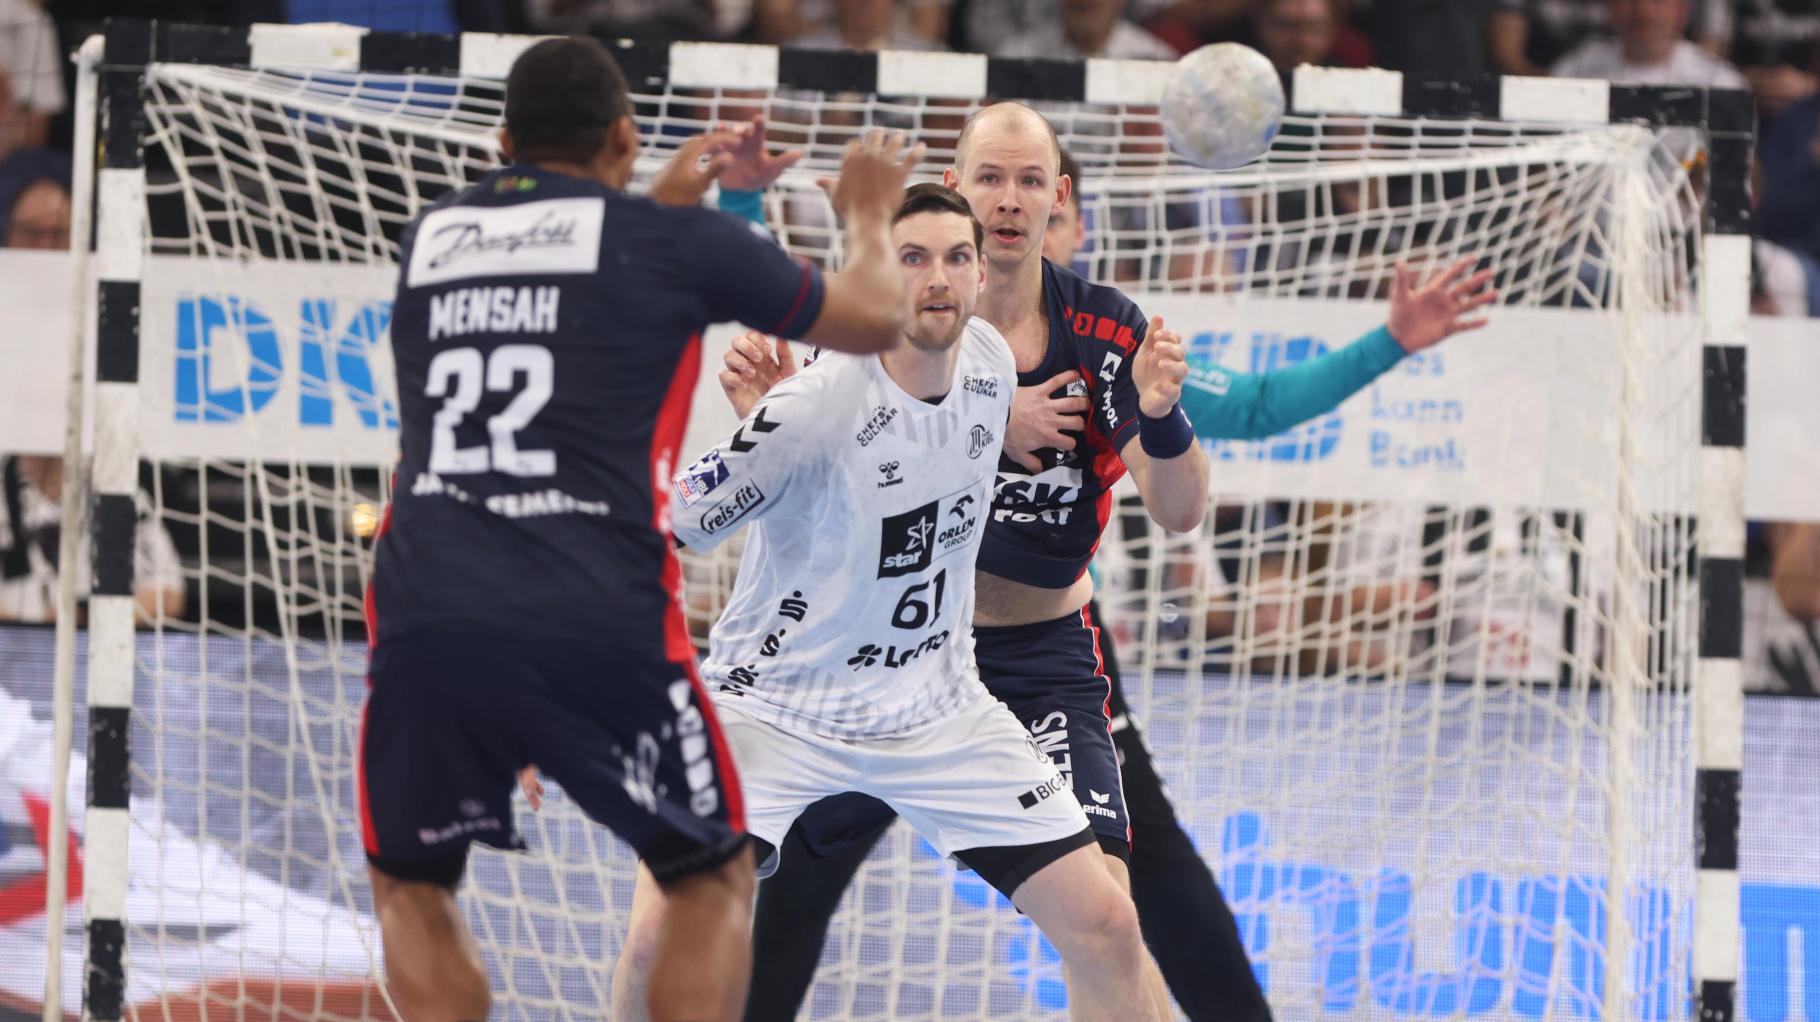 Handballwoche.de THW Kiel dominiert auch zweite Halbzeit gegen die SG Flensburg-Handewitt